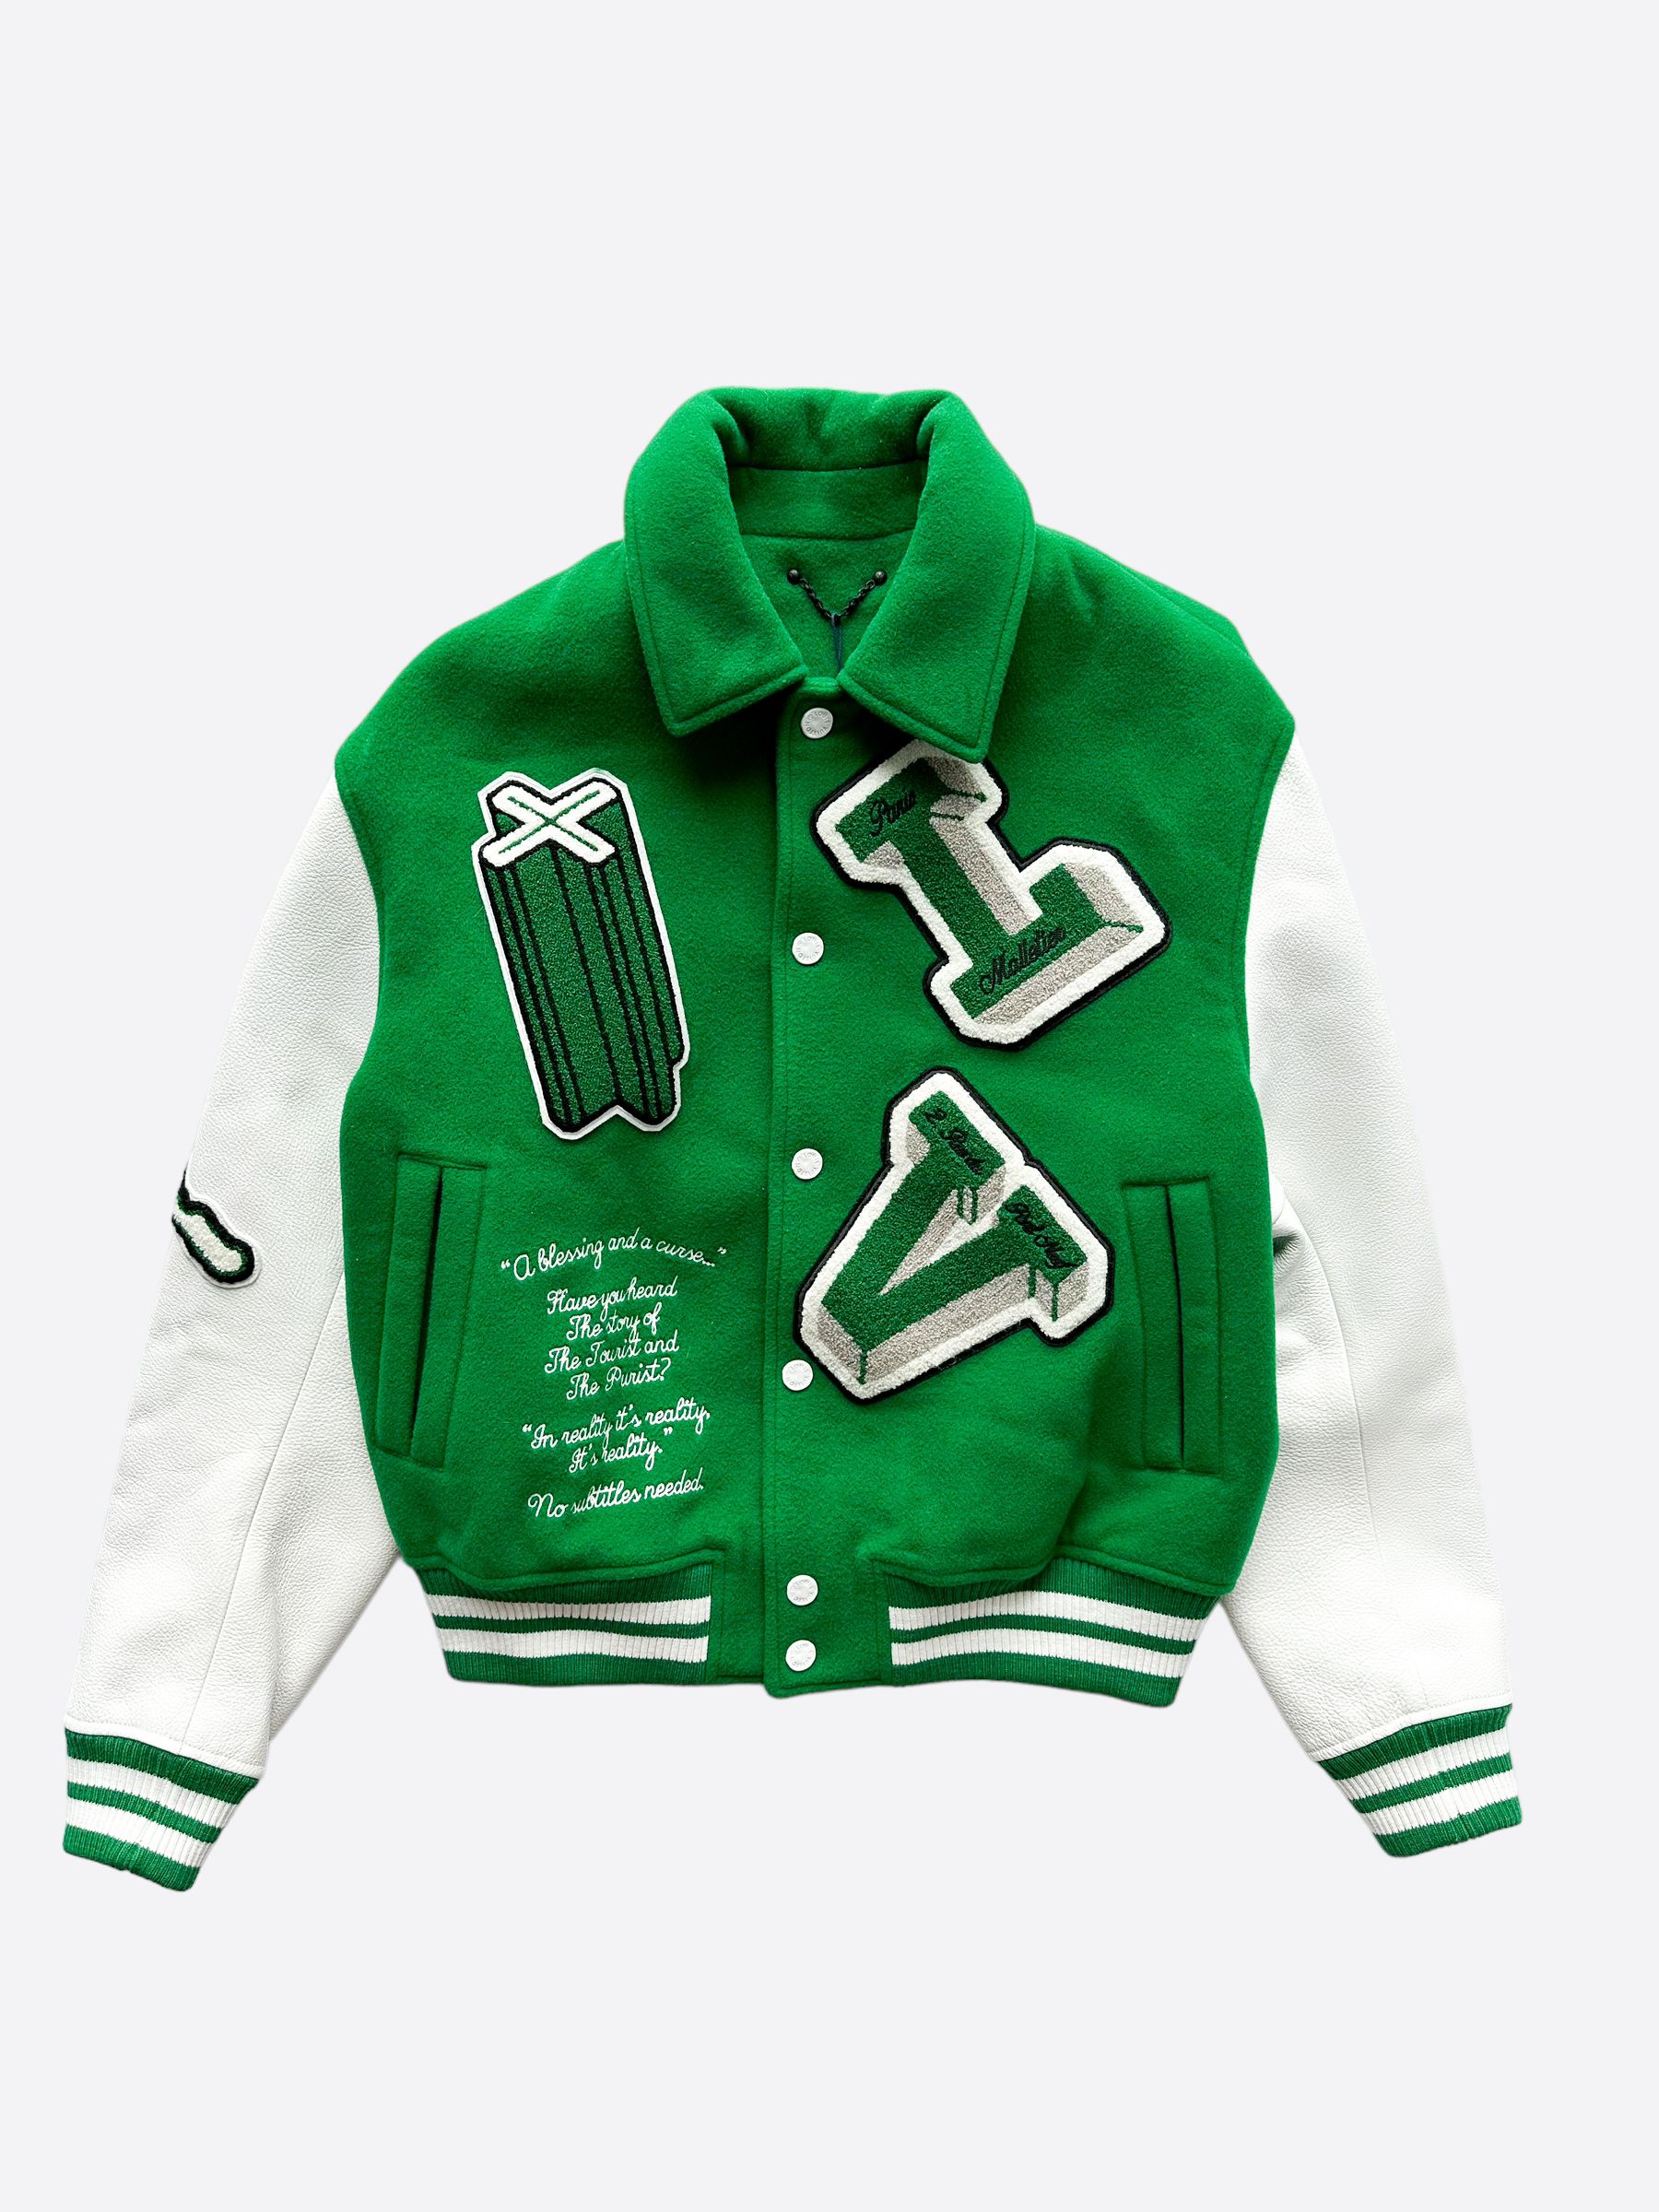 Louis Vuitton NBA Monogram Denim Zip Up Jacket – Savonches